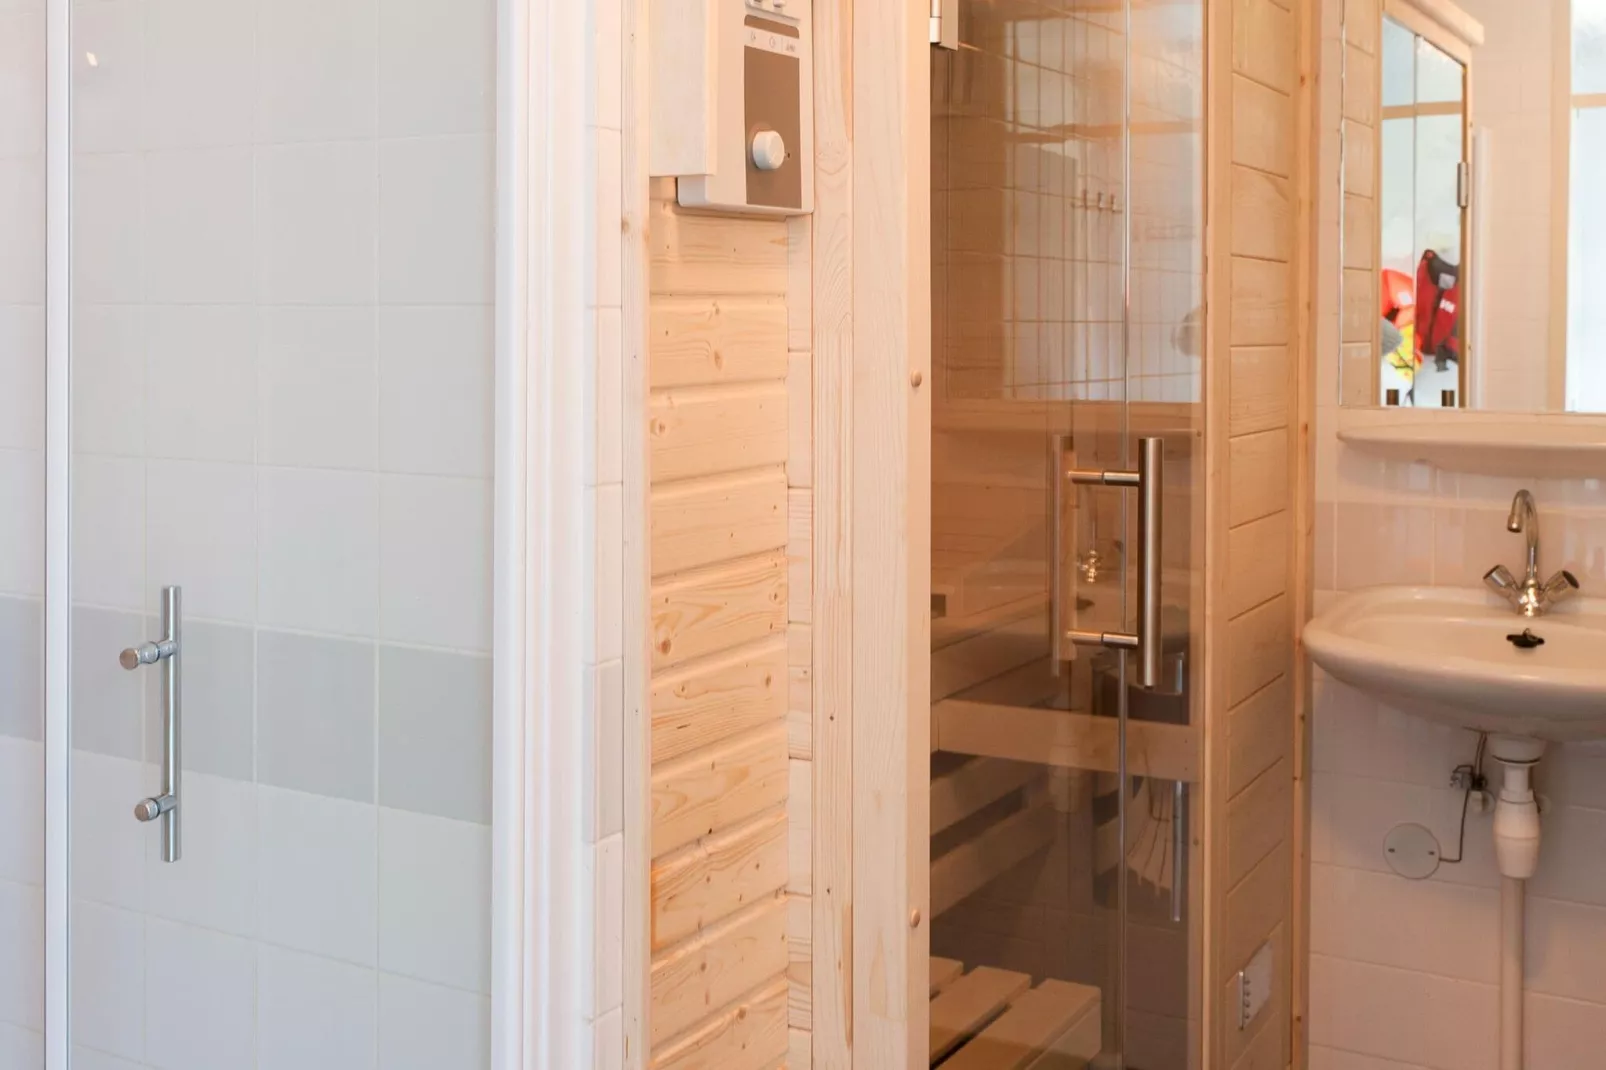 Grand Tolve Wellness de luxe met sauna buitenspa-Wellness